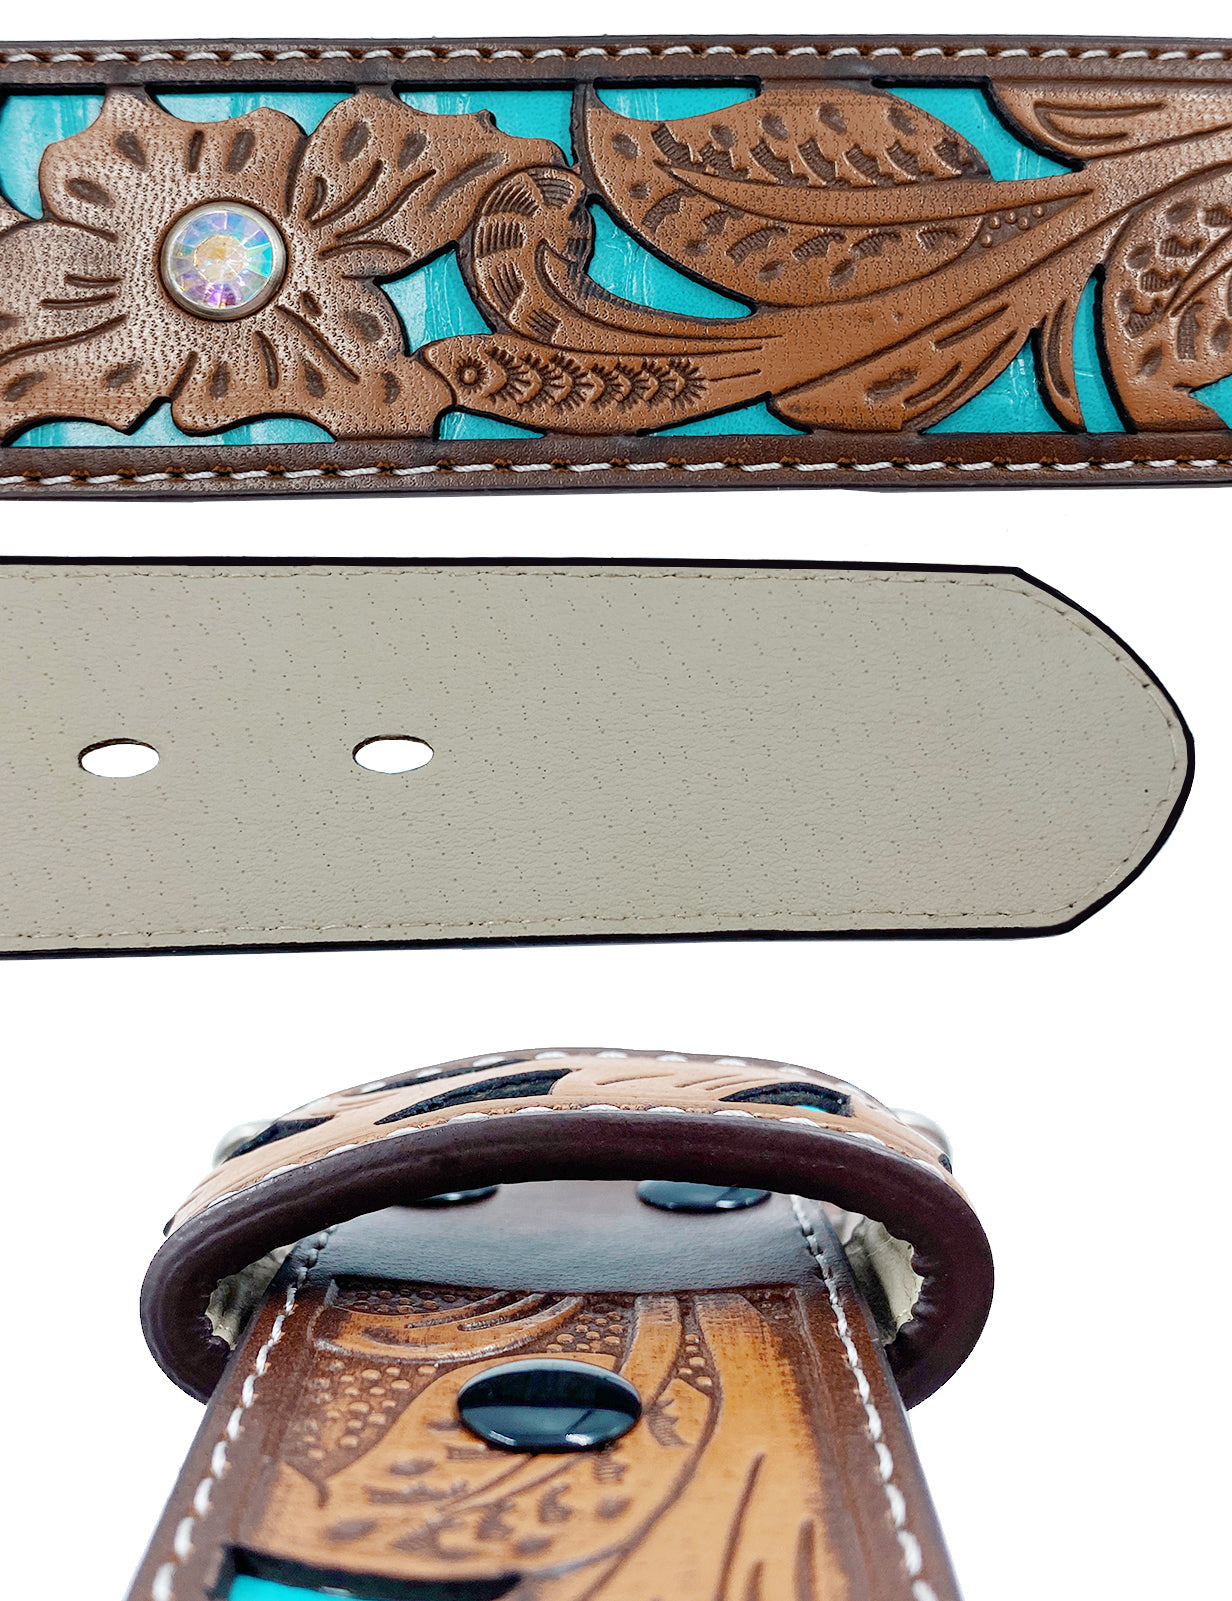 TOPACC Western Turquoise Belts - Longhorn Cow Bull Belt Buckle Copper/Bronze